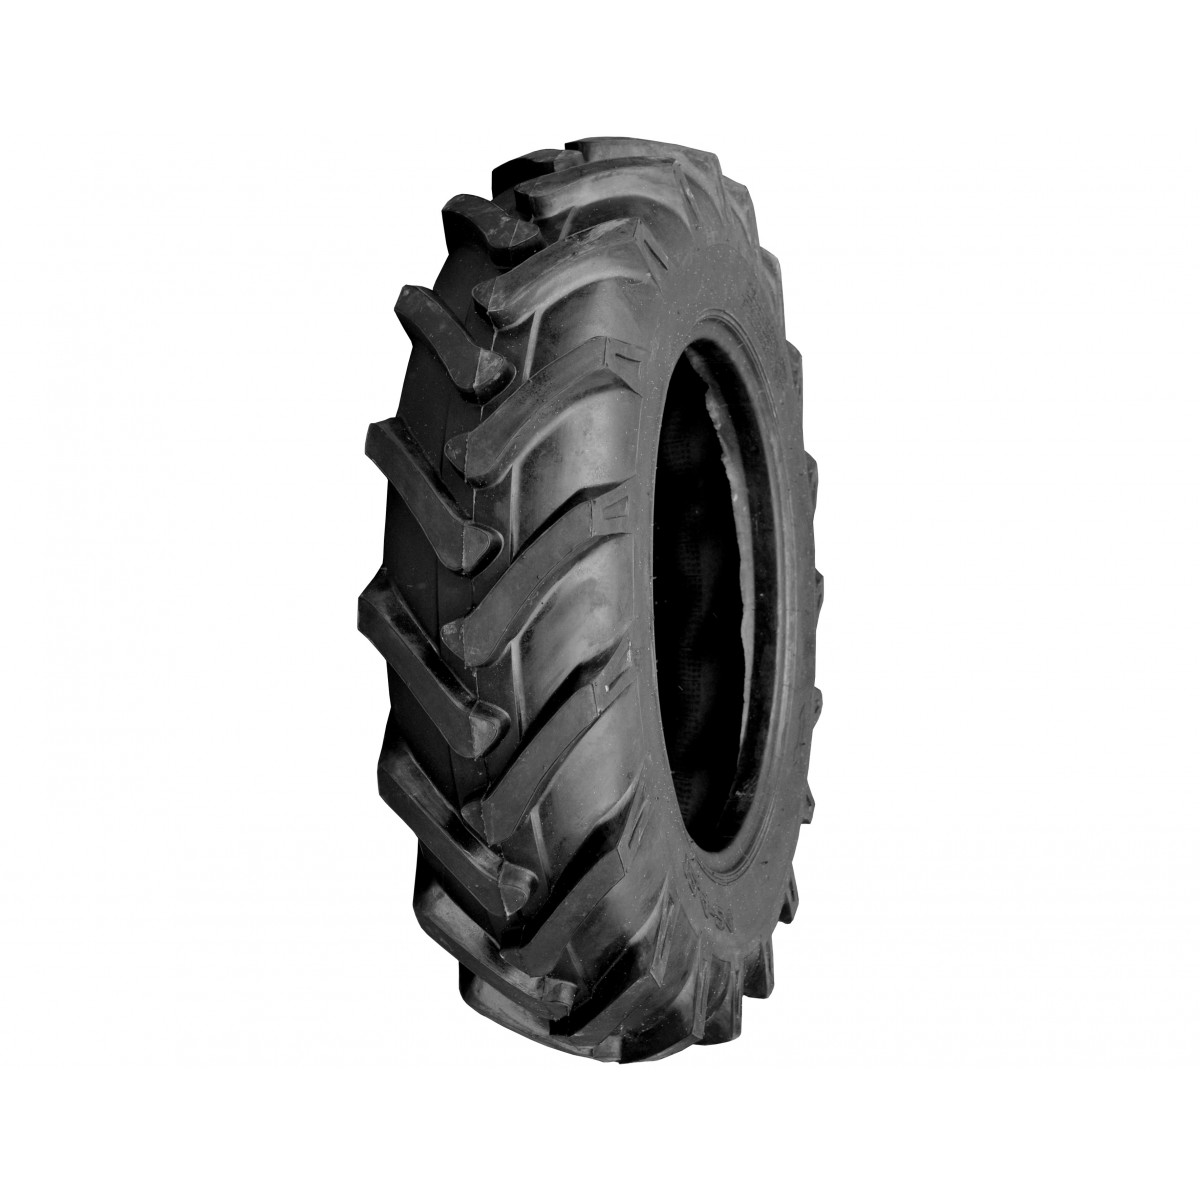 Agricultural tire 12.4-24 8PR 12.4x24 FIR